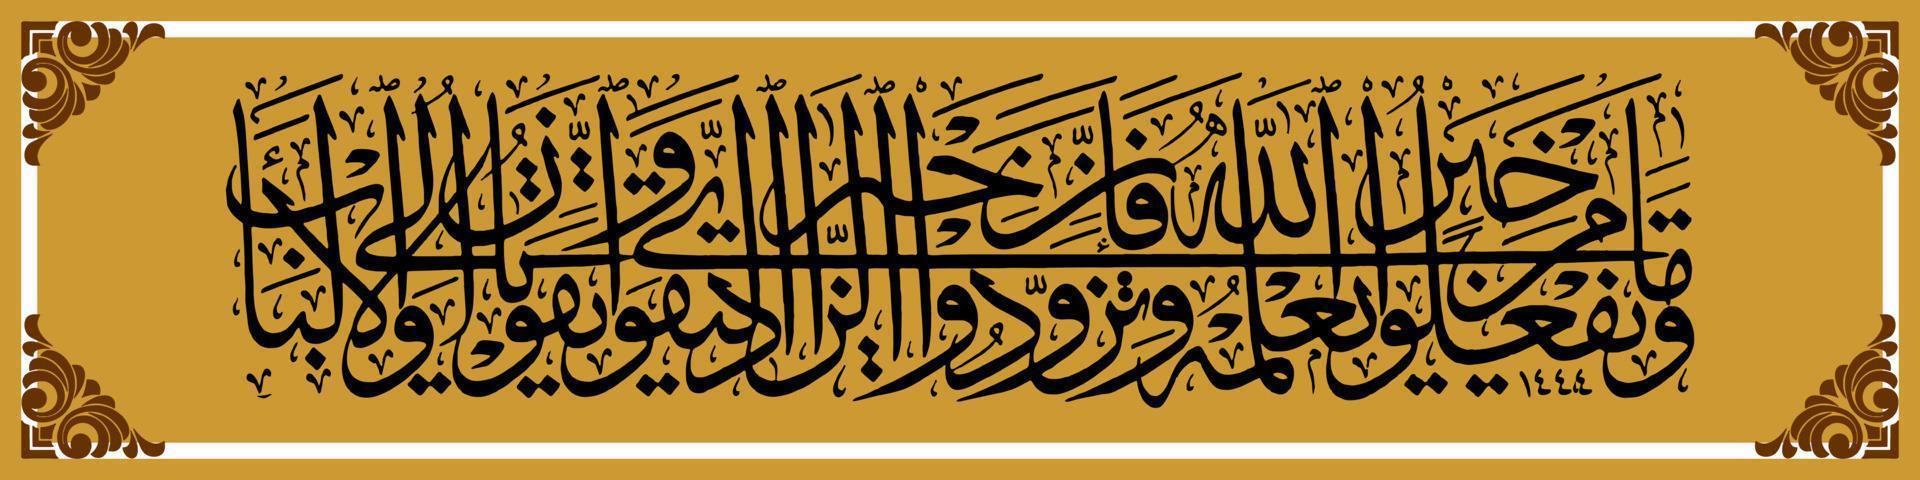 arabische kalligraphie, al qur'an surah al baqarah 197, übersetzung alles gute, was du tust, allah weiß es. Proviant mitbringen, denn eigentlich ist die beste Proviant Frömmigkeit. und fürchte mich, vektor